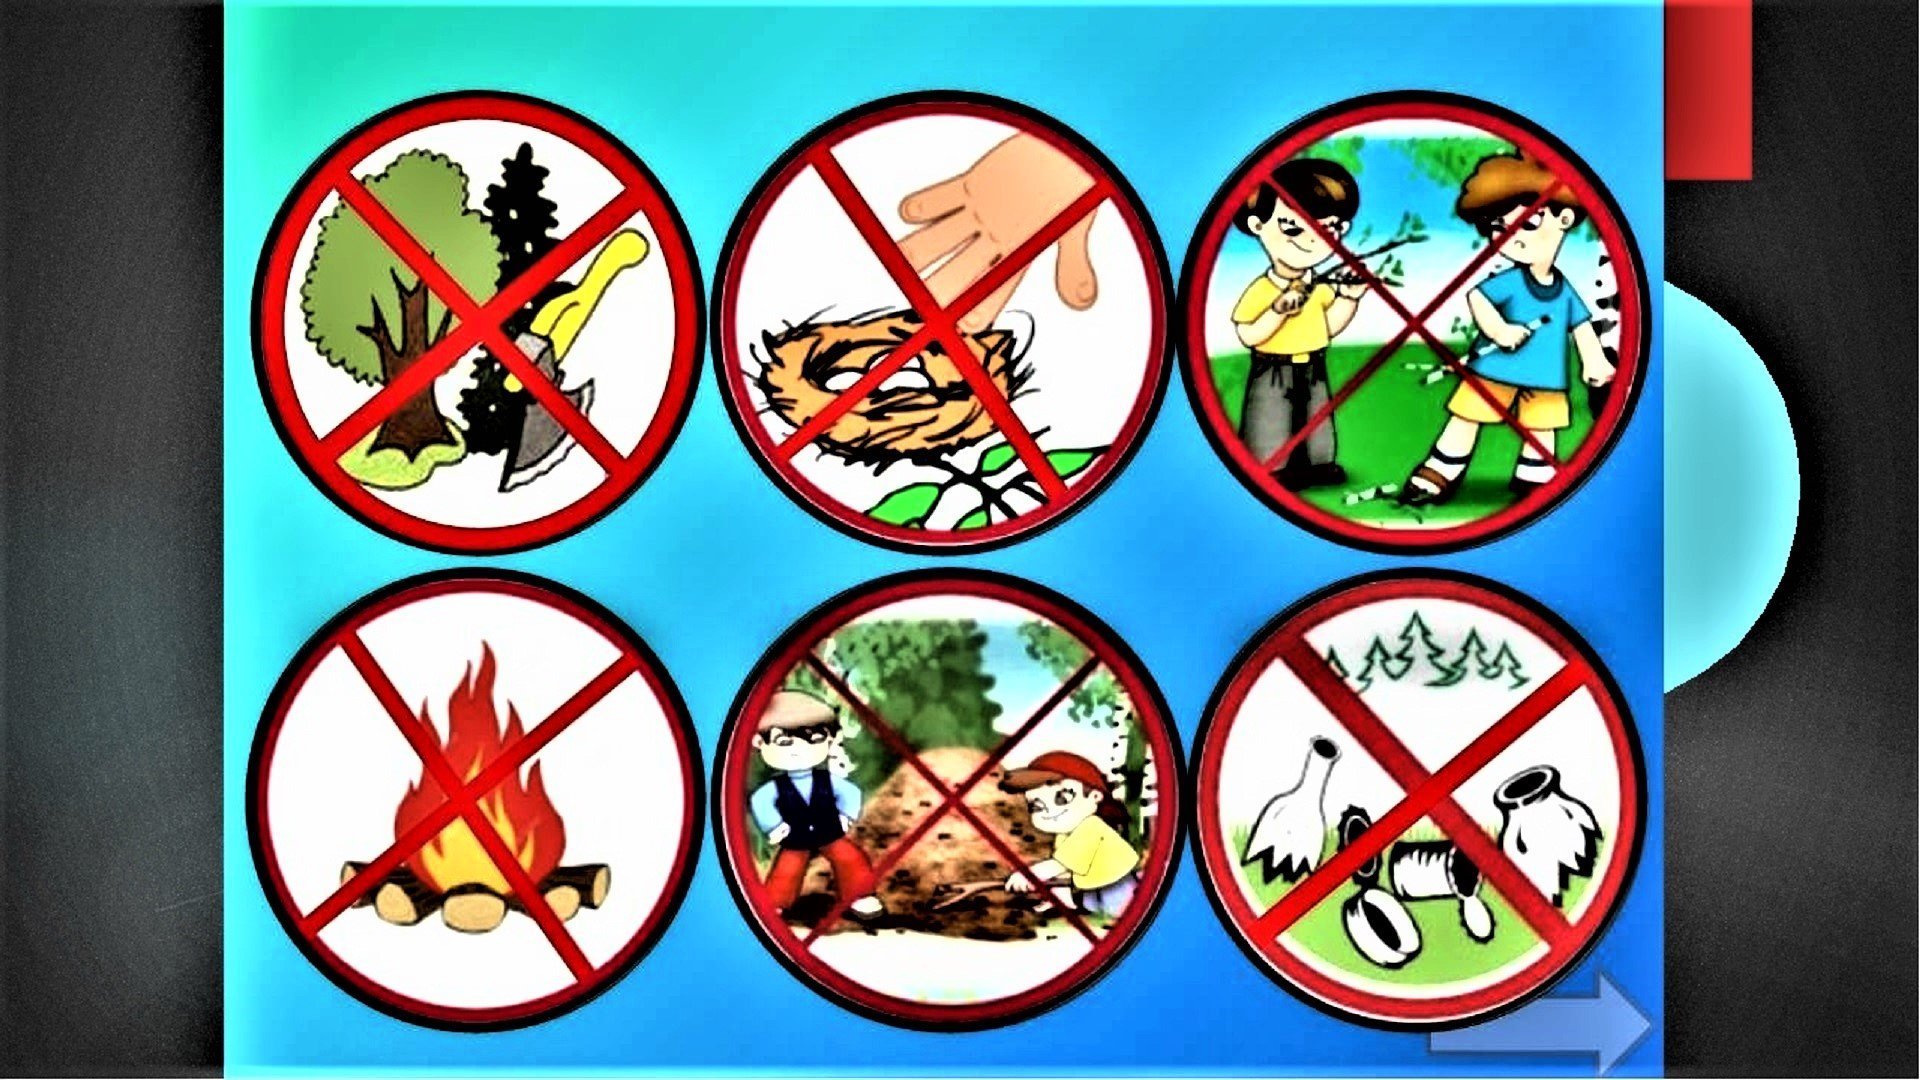 Правила поведения в природе в картинках. Природоохранные знаки. Запрещающие знаки в лесу. Экологические знаки природы. Знаки поведения в лесу.